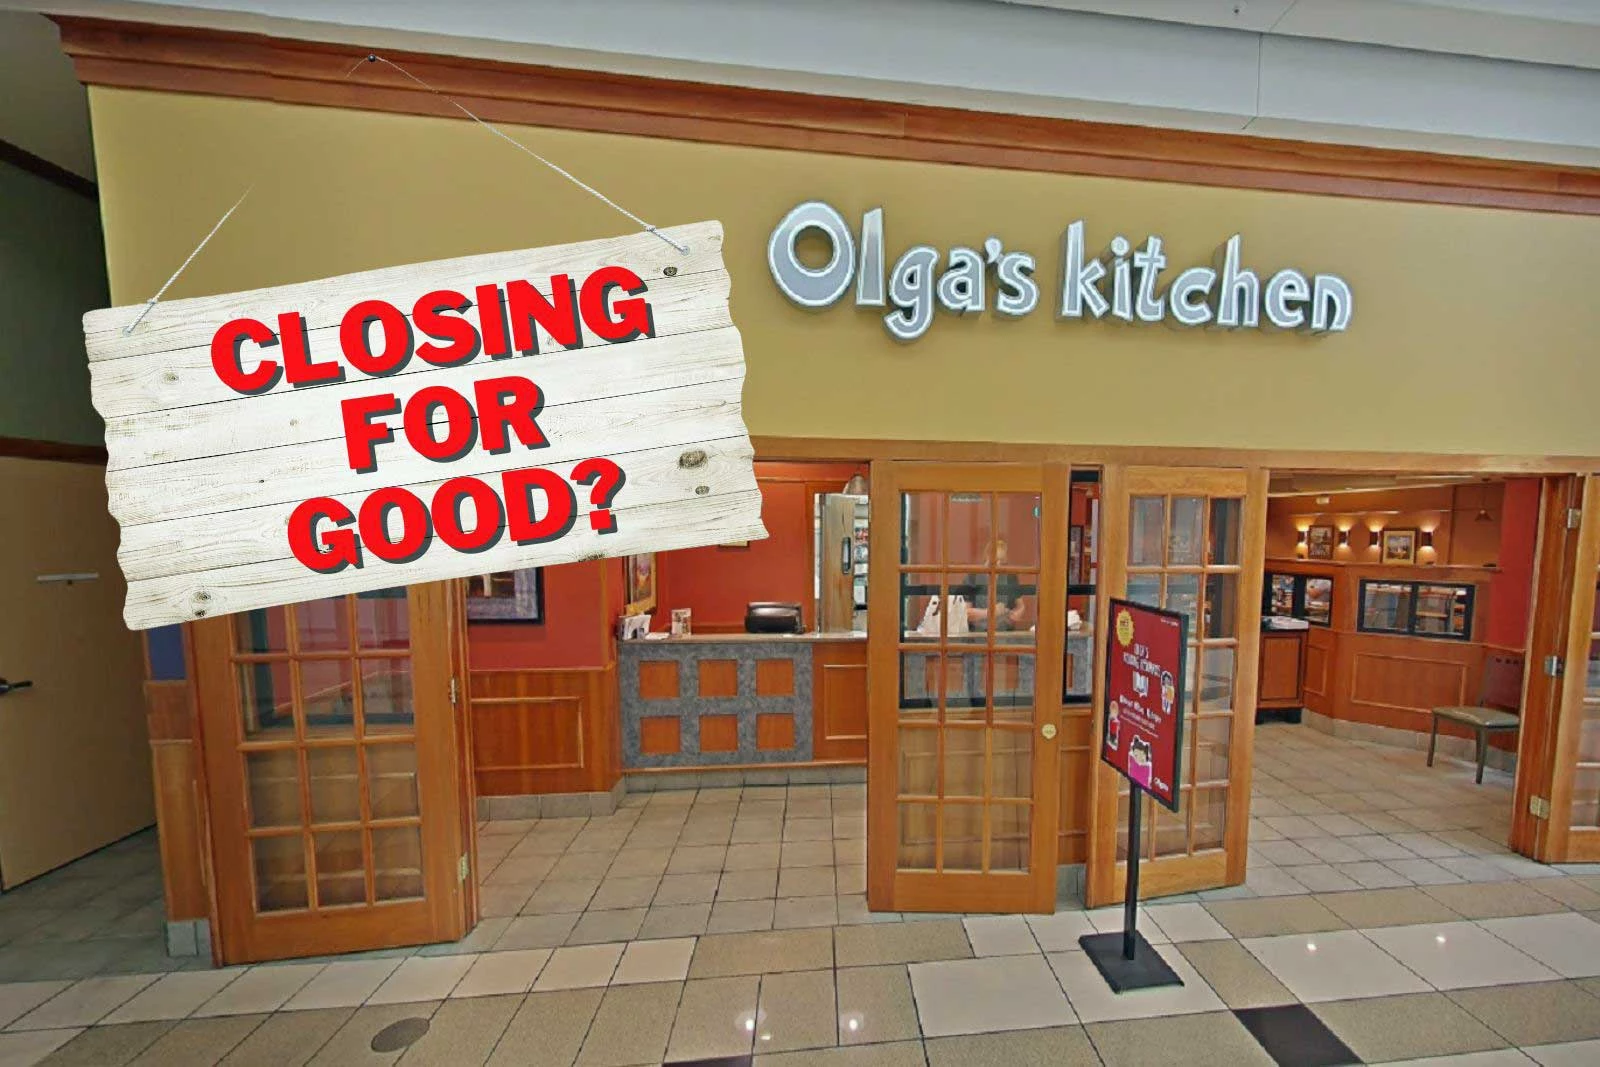 Attachment Olgas Kitchen Closing 